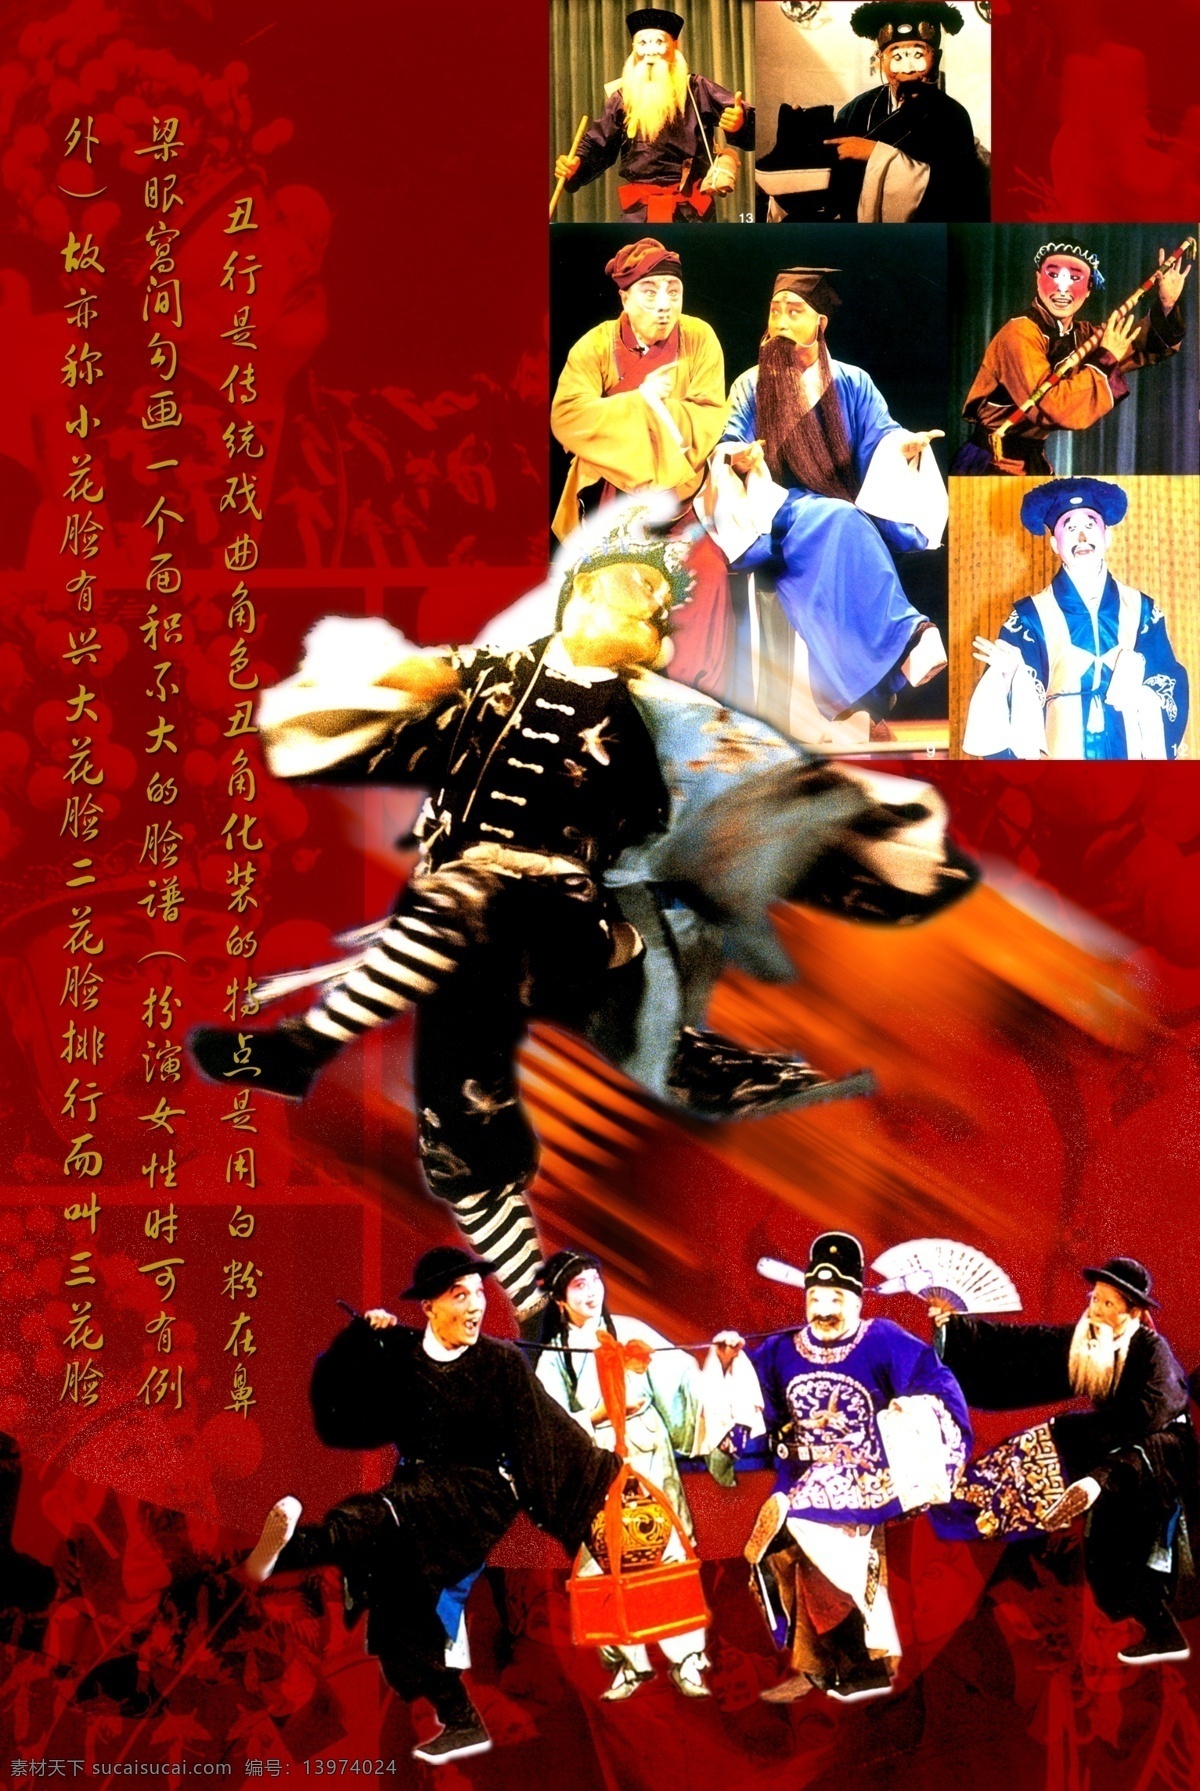 京剧 丑角 艺术 模板 古典素材 中国传统文化 中国元素 民族 文化展 版 psd源文件